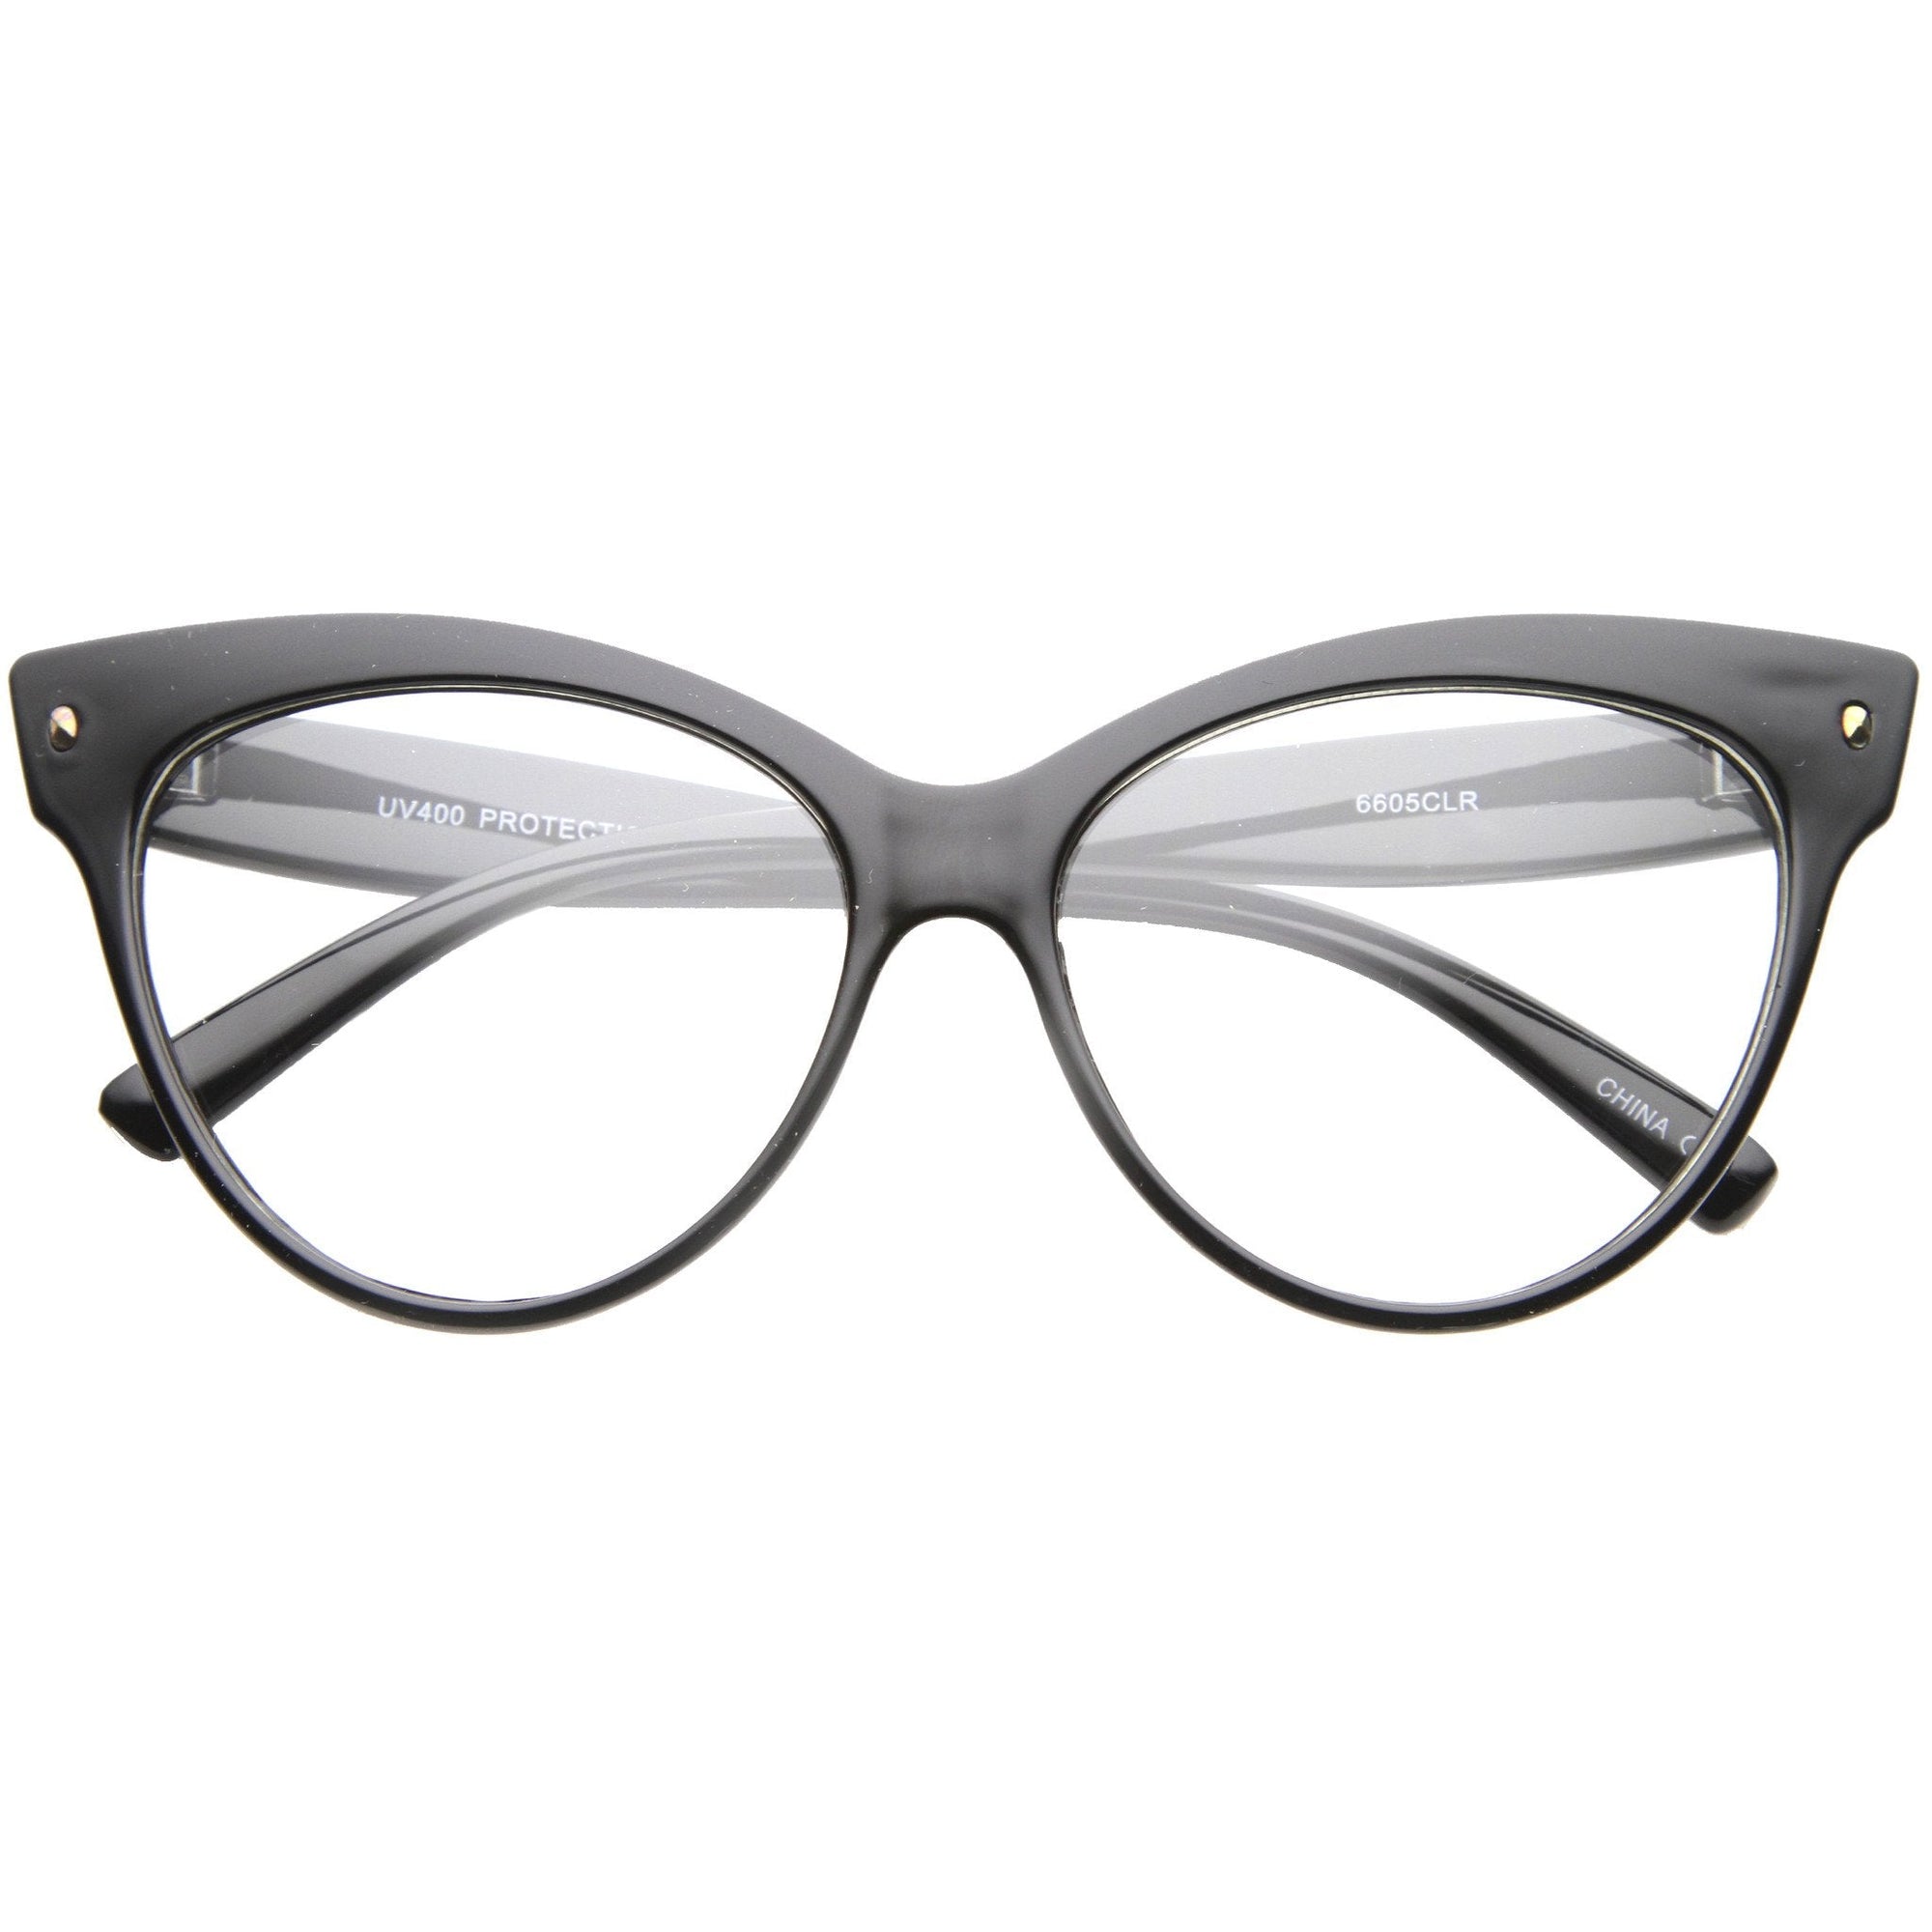 Gafas retro con lentes transparentes estilo ojo de gato de los años 50 para mujer A099